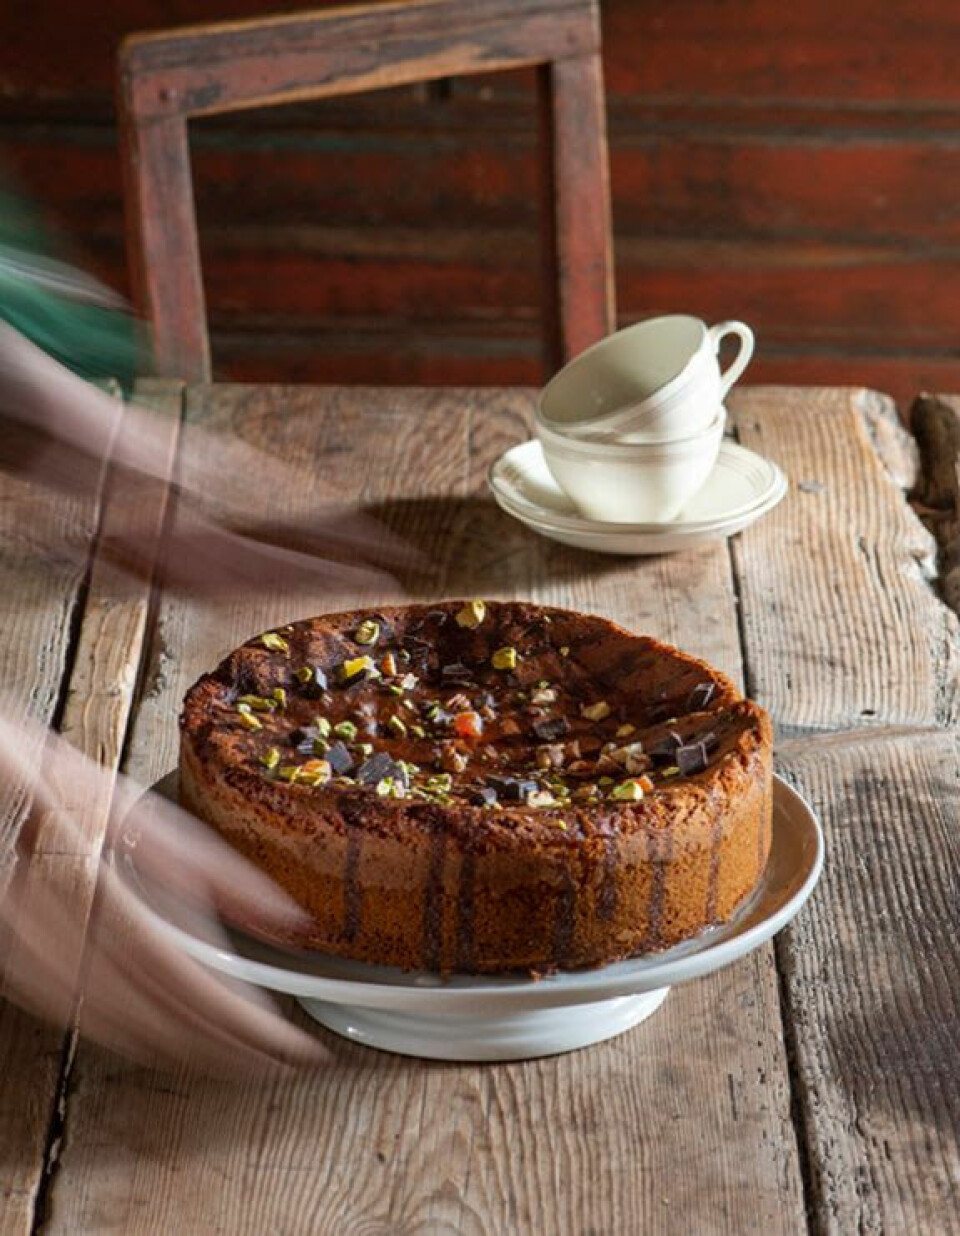 Honningkake har lange tradisjoner. Oppskriften på denne kaken kommer fra Oselia som var husjomfru hos Sam Eyde i Arendal ca 1870-1885.